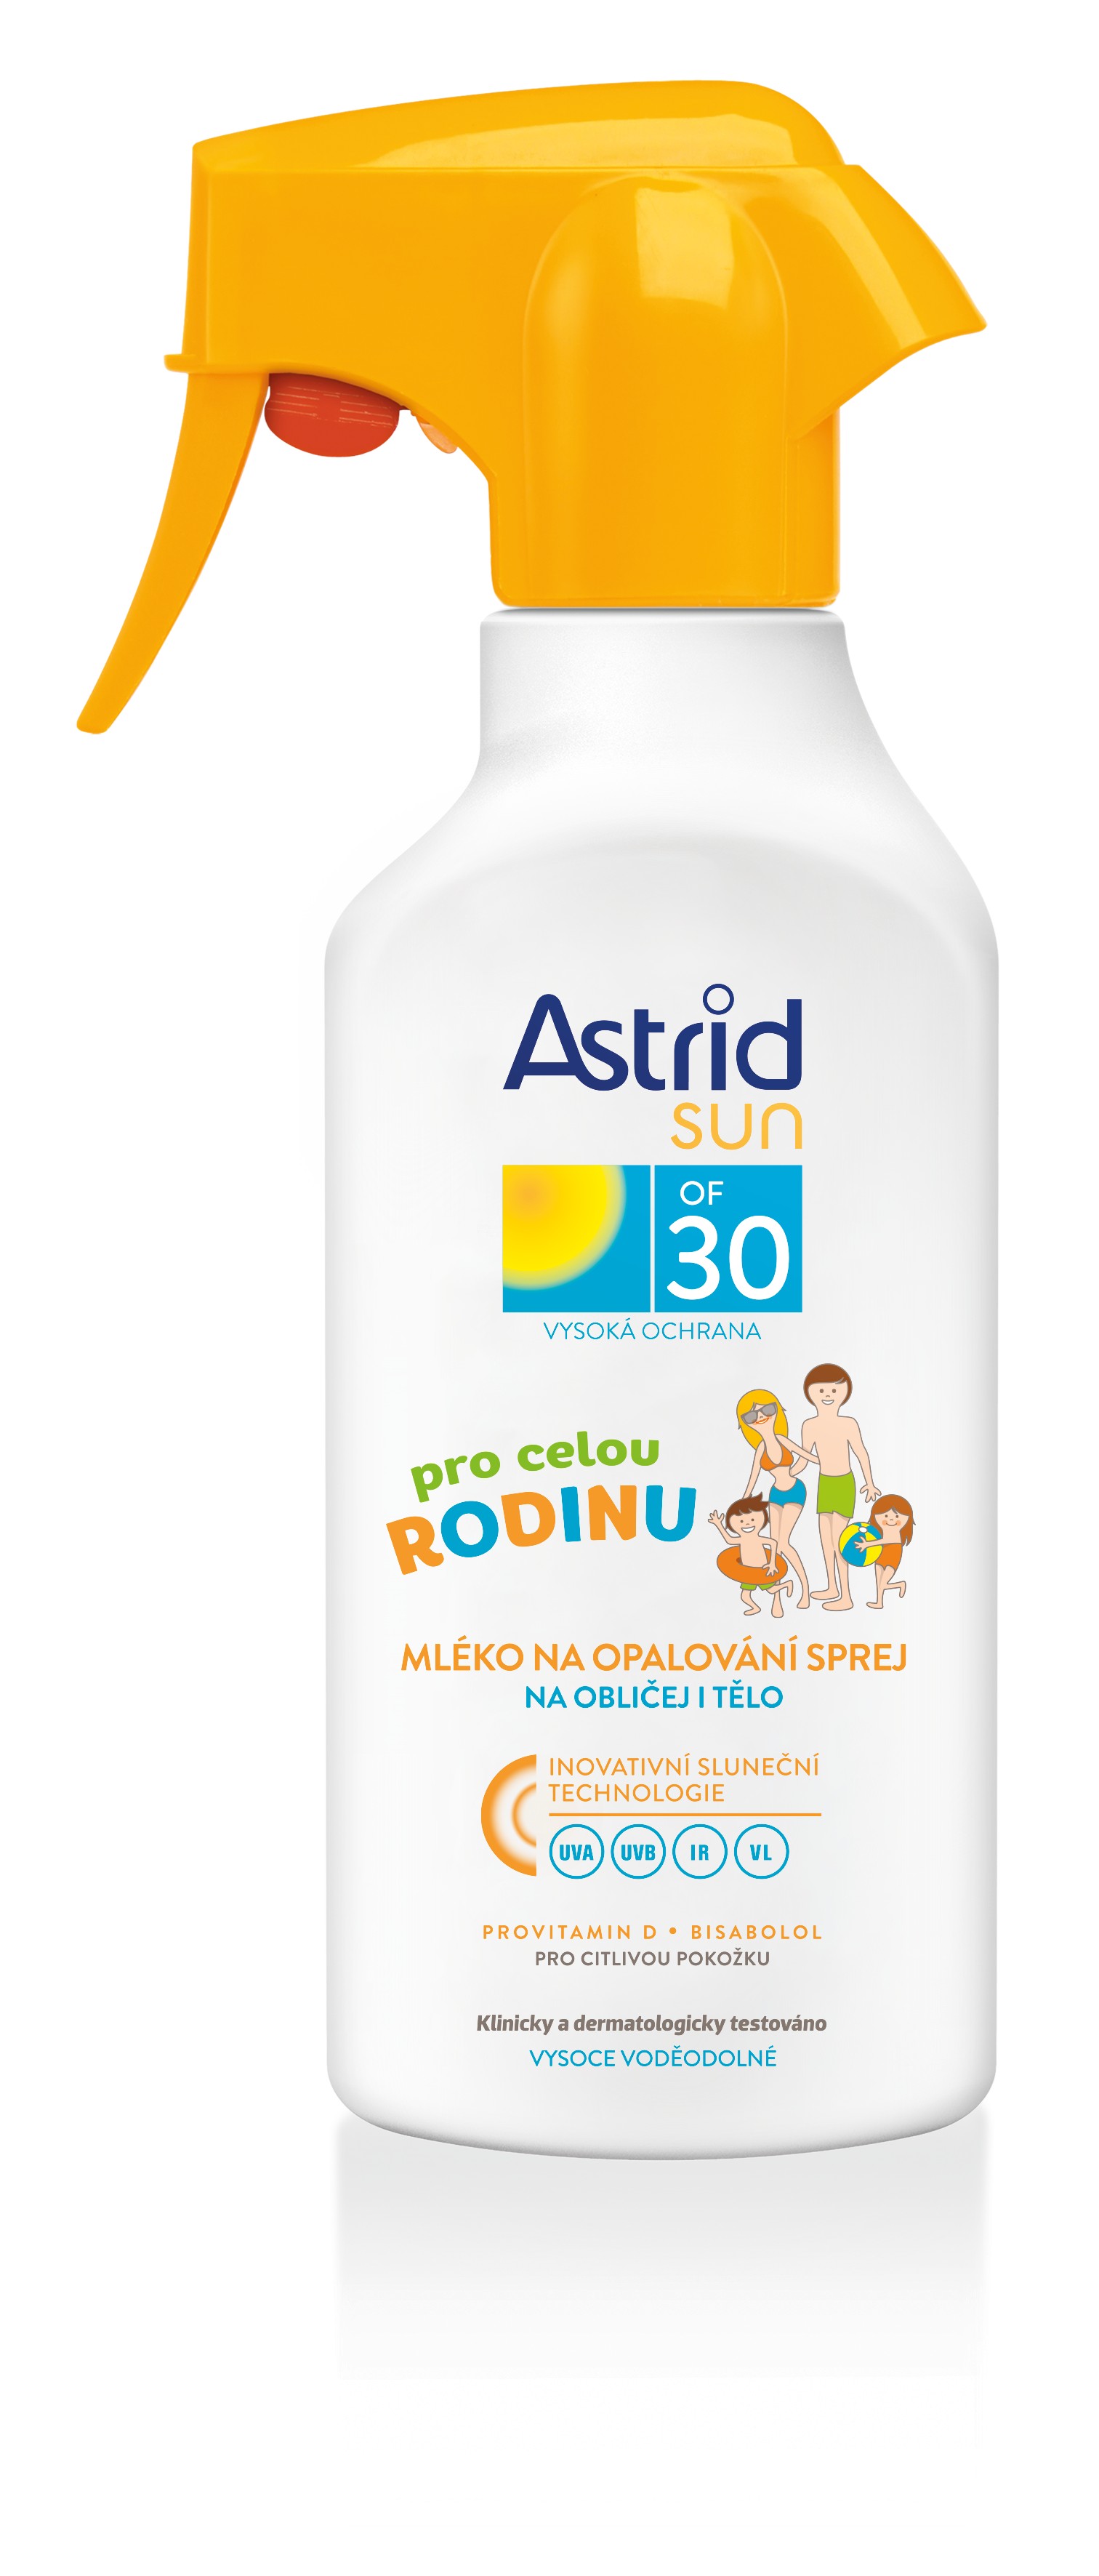 Astrid Napvédő krém spray-ben érzékeny bőrre az egész család számára OF 30 Sun 270 ml